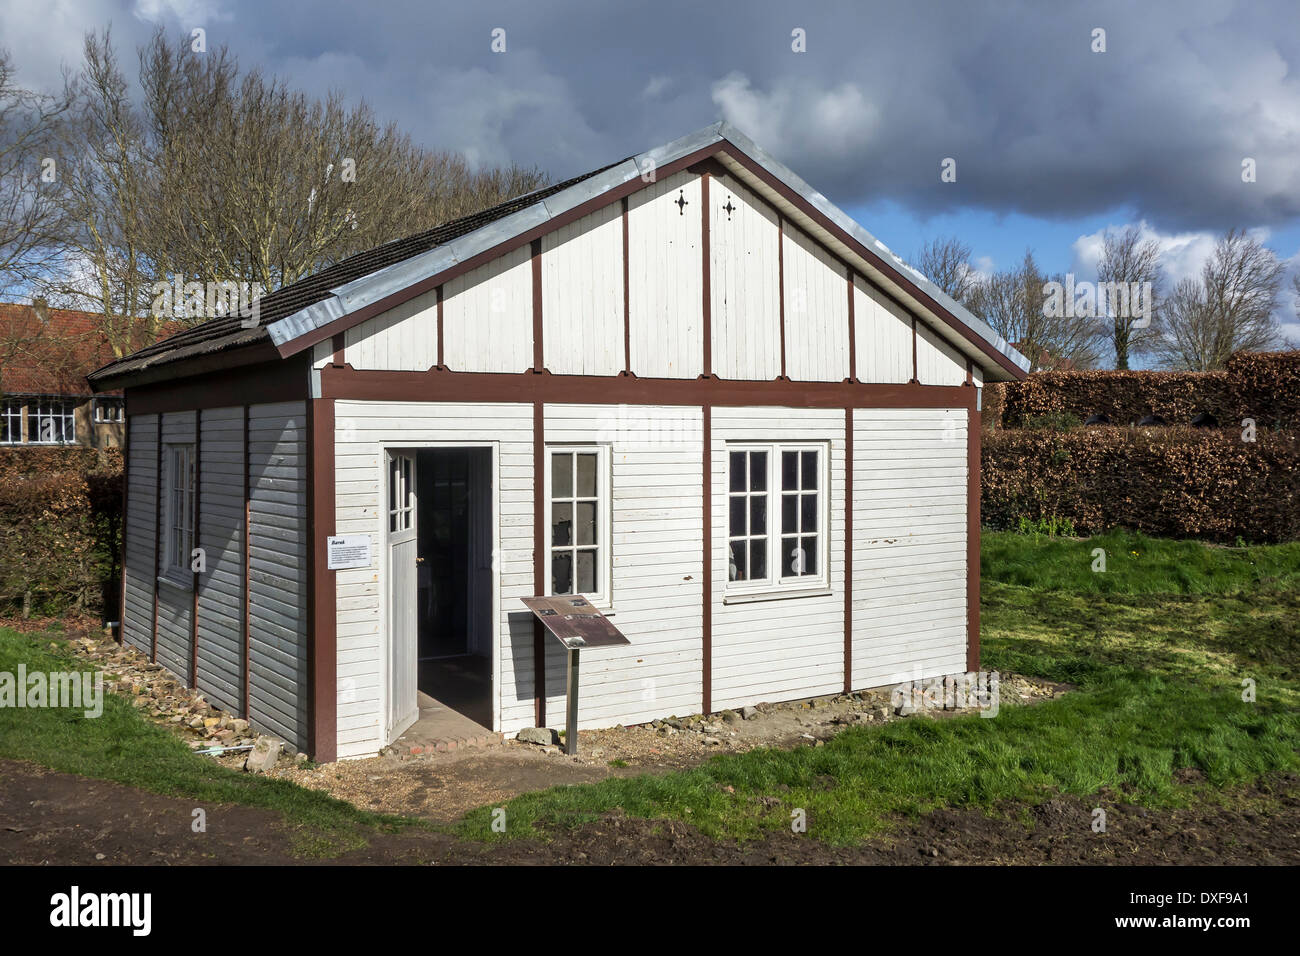 WWI baracca di legno usato come prefabbricato casa temporanea per la prima guerra mondiale una vittime civili, Fiandre Occidentali, Belgio Foto Stock